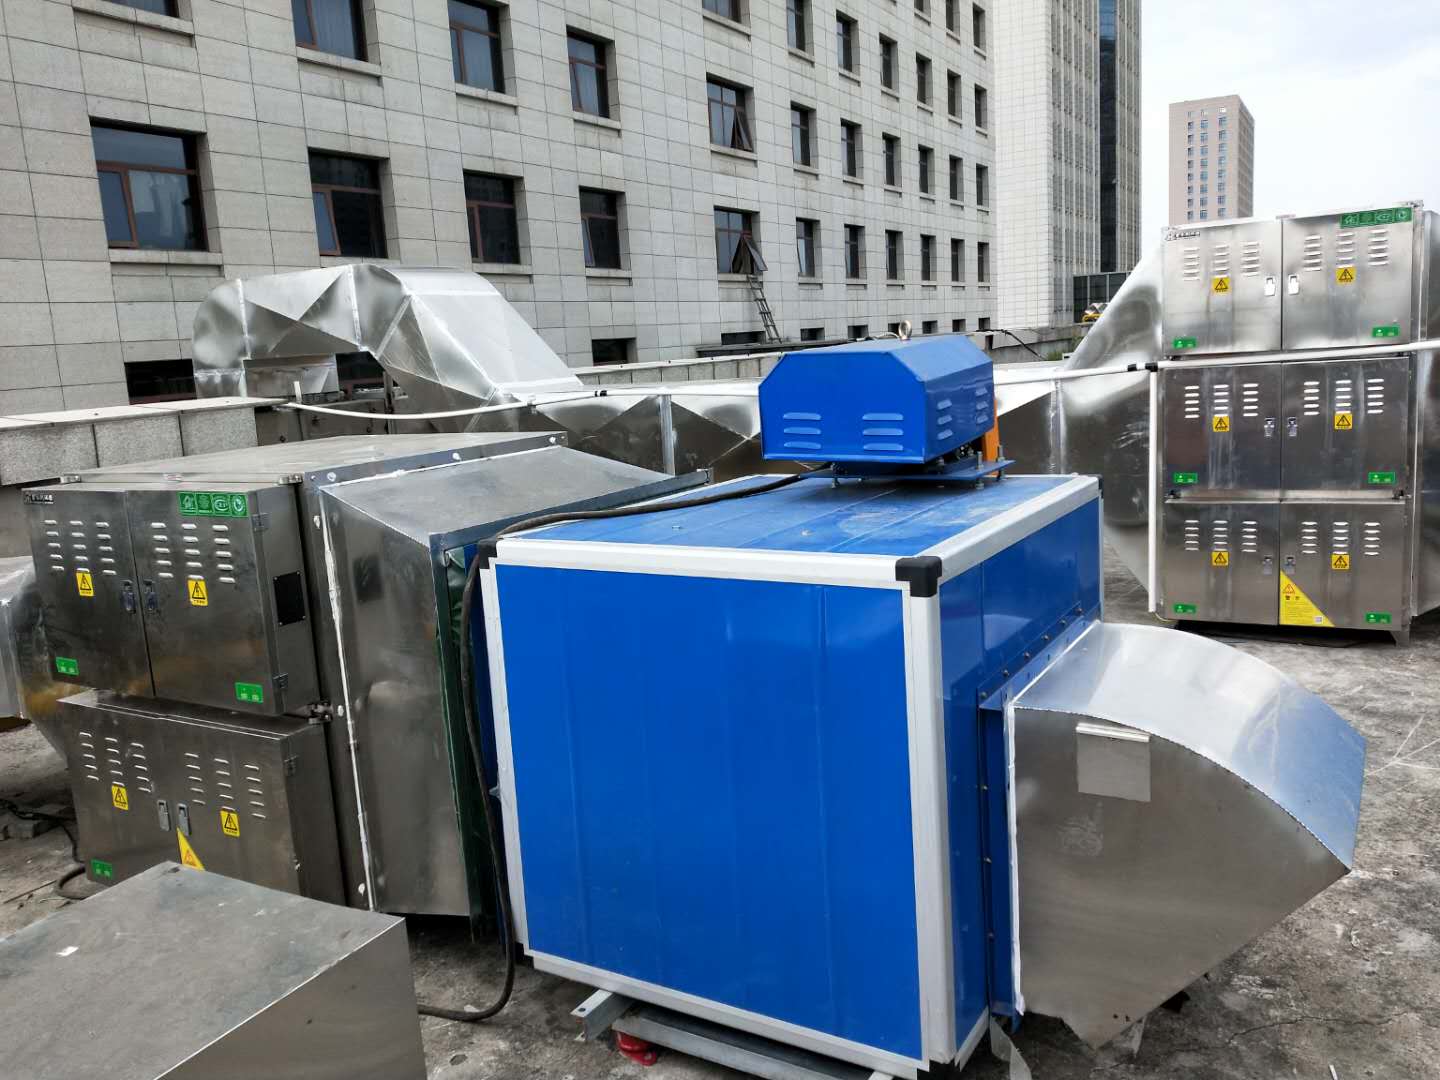 郑州市残联低空厨房静电油烟净化器安装实拍